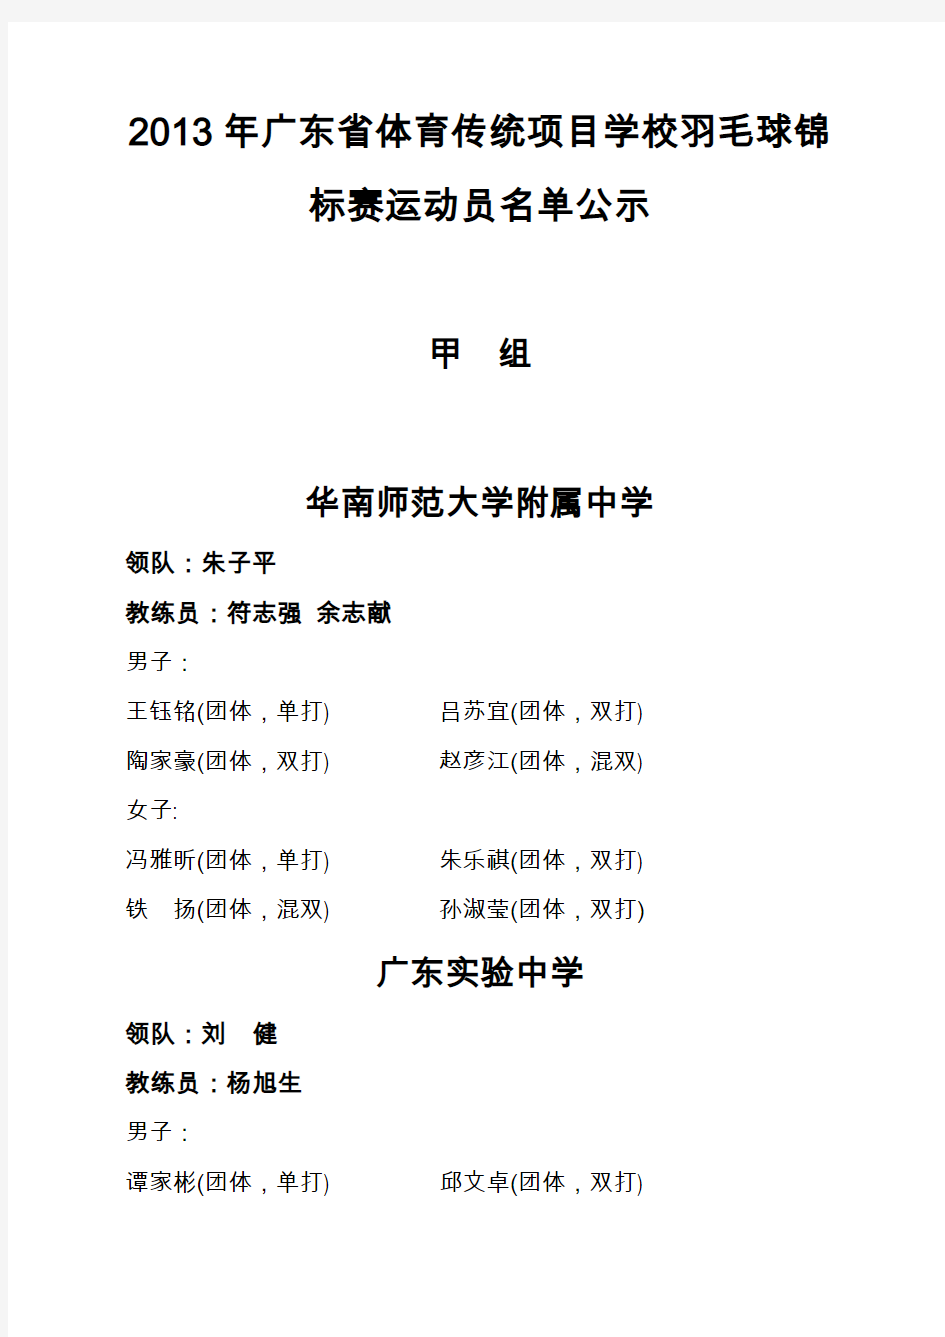 2013年广东省体育传统项目学校羽毛球锦标赛运动员名单公示论述